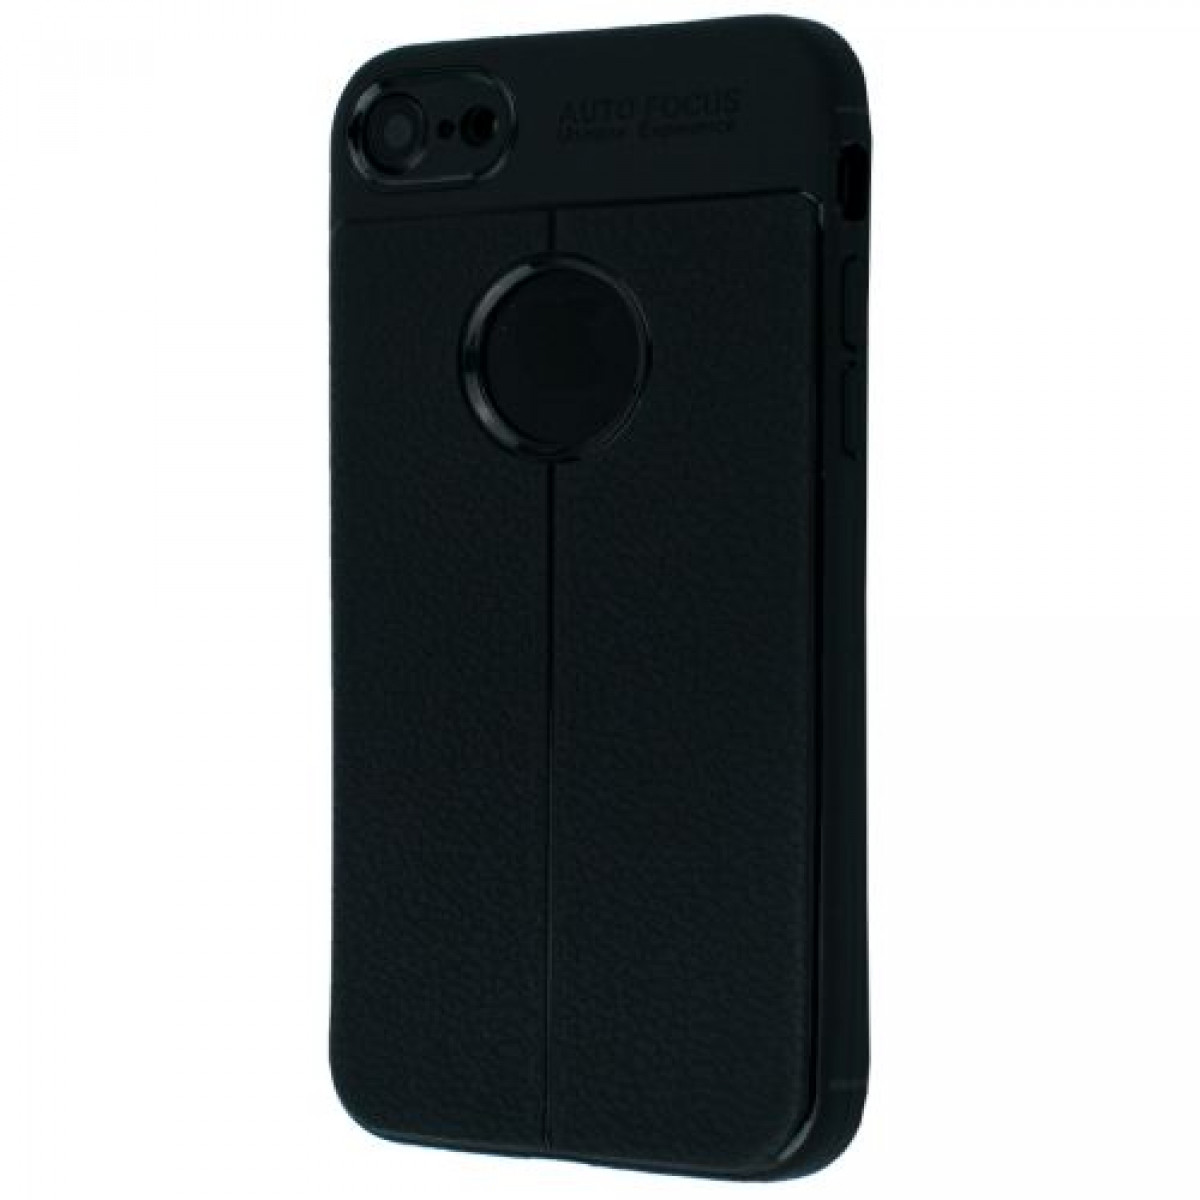 Auto Focus Black TPU Case iPhone 7 Plus/8 Plus